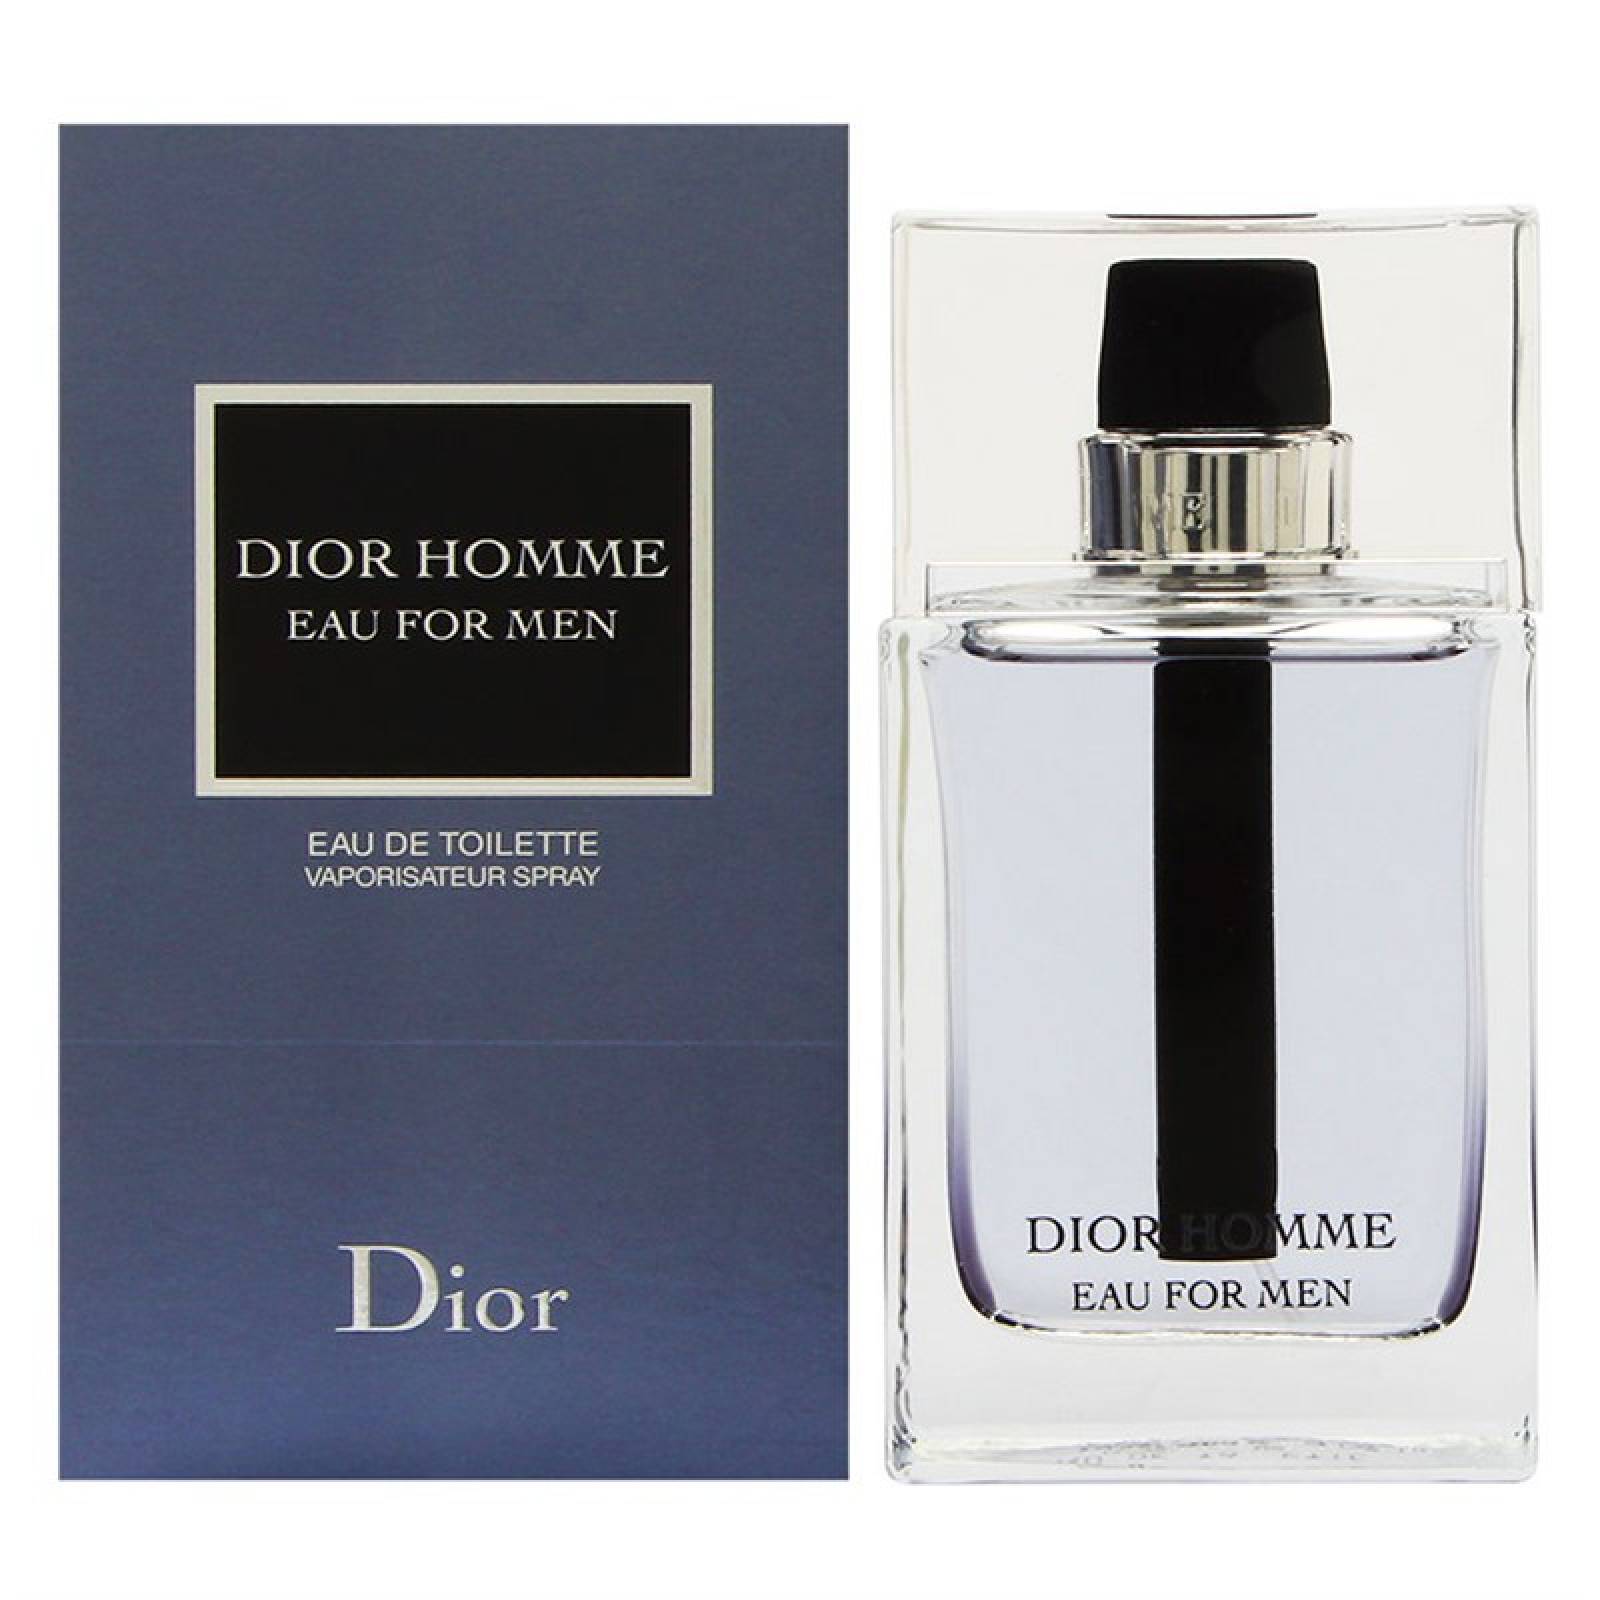 Dior Homme Eau For Men de Christian Dior Fragancia para Caballero